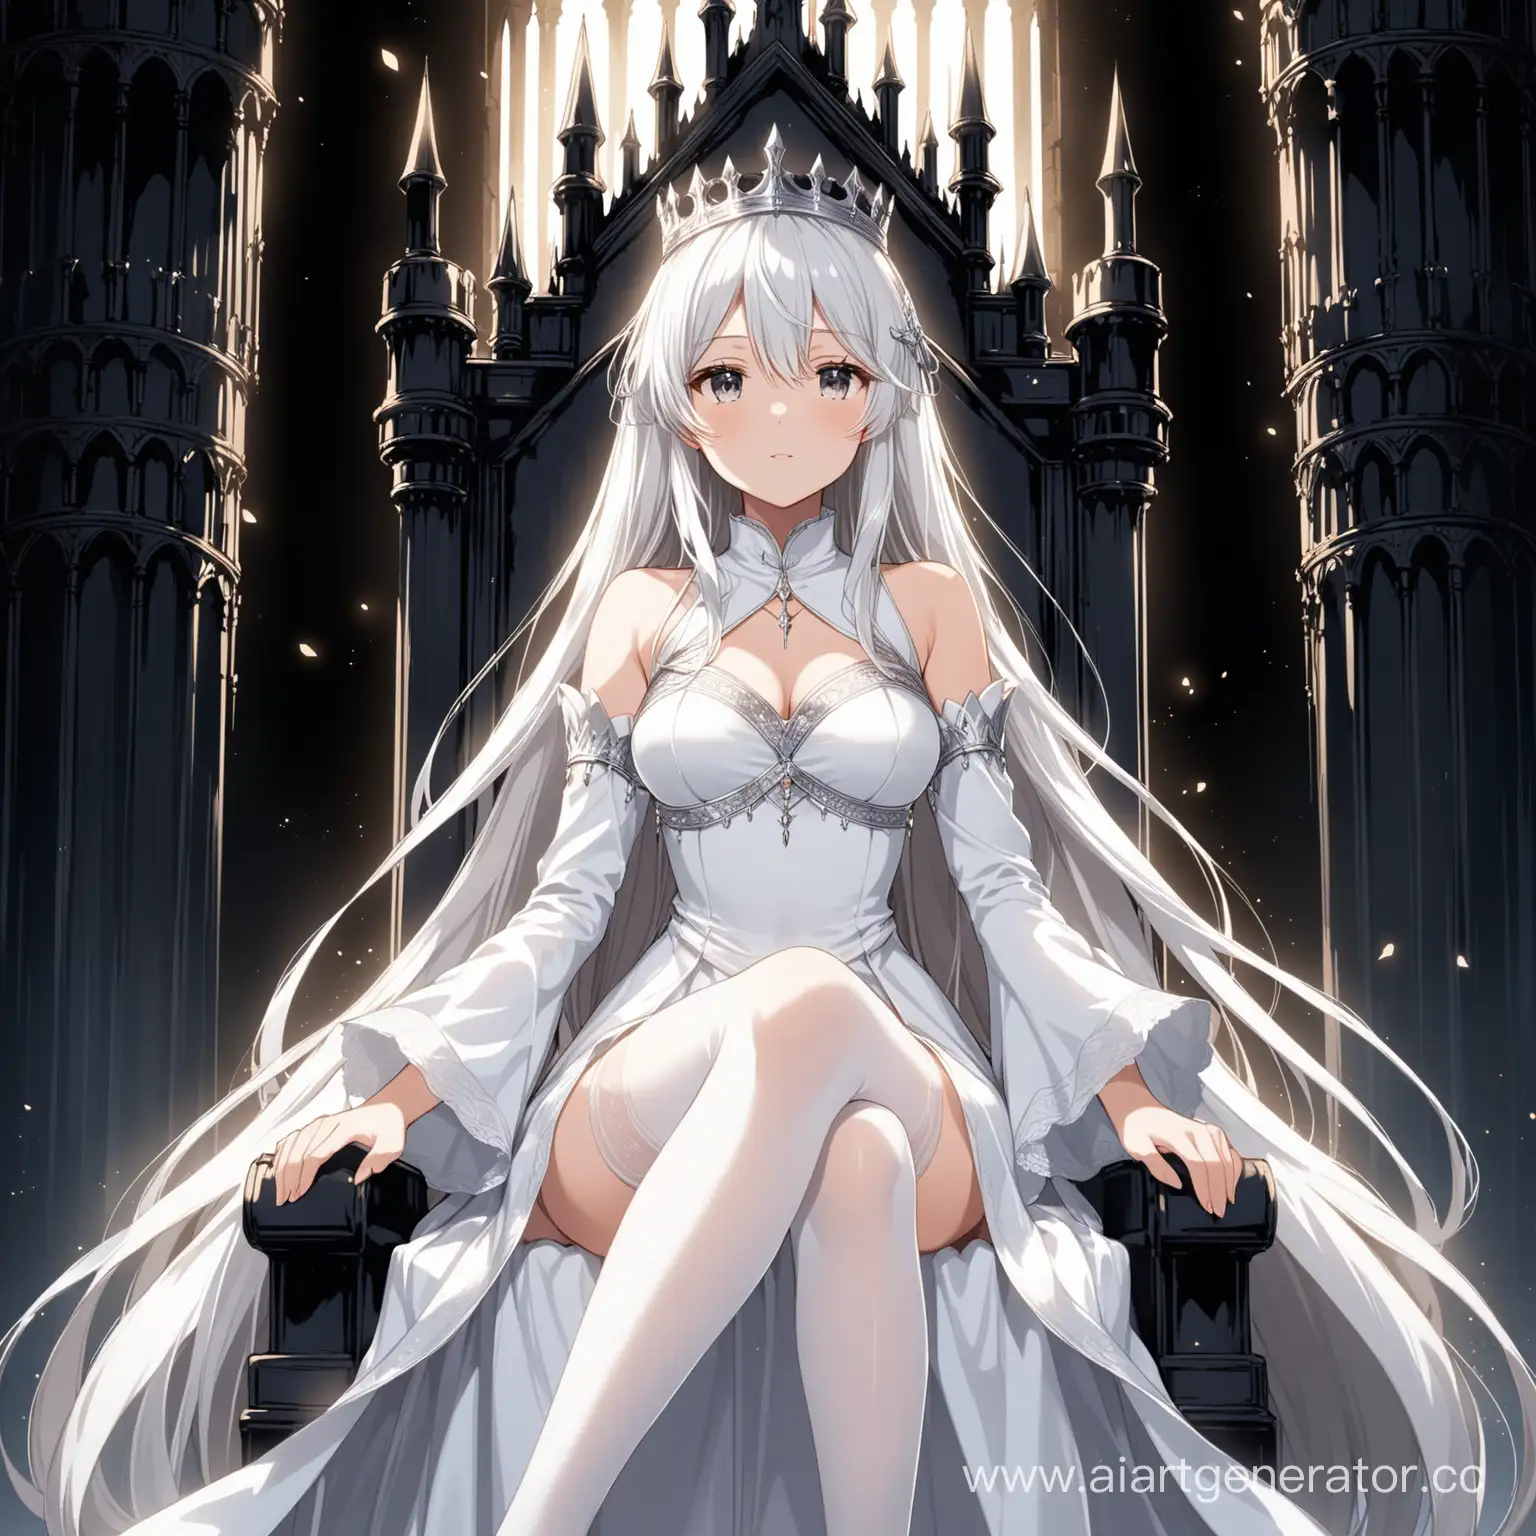 Аниме девушка в белом платье, в белых чулках, с длинными серебристыми волосами, сидящая на троне в замке, с чёрными стенами